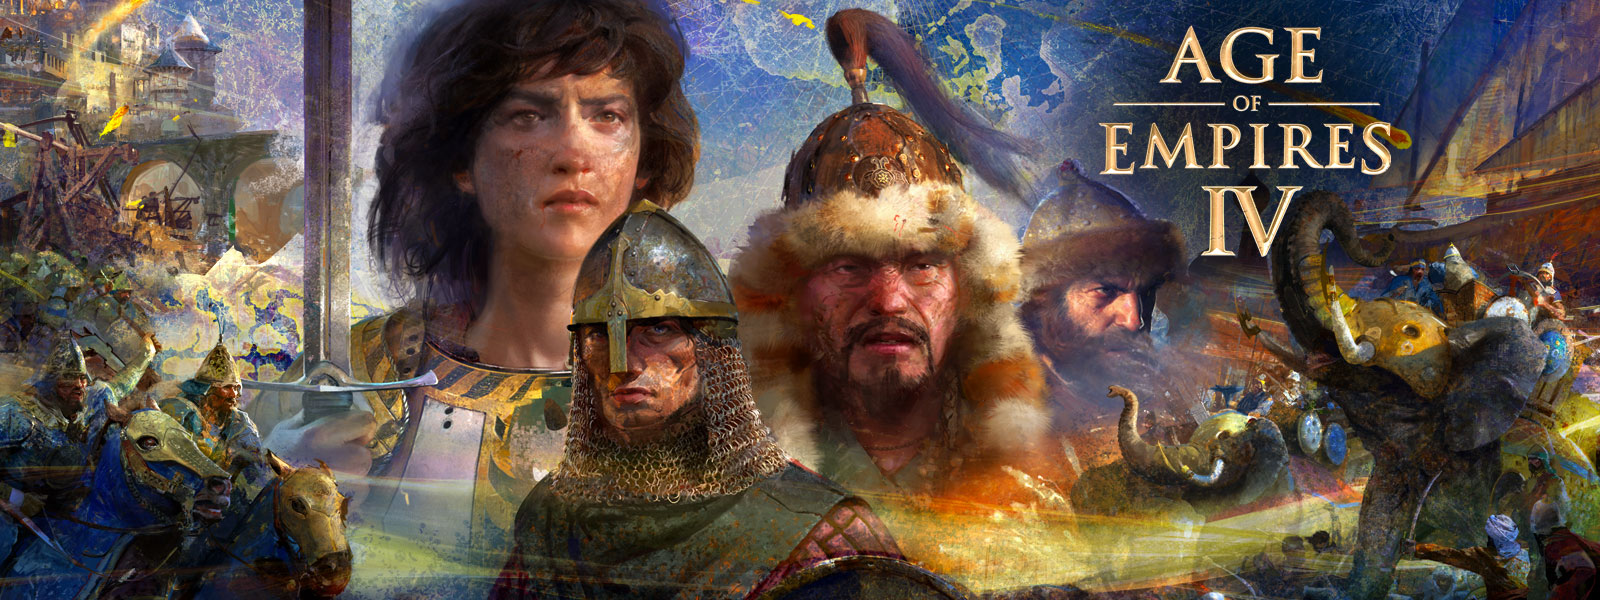 Age of Empires IV. Quattro personaggi con scene di guerra, elefanti e uomini a cavallo attorno a loro sullo sfondo di una mappa